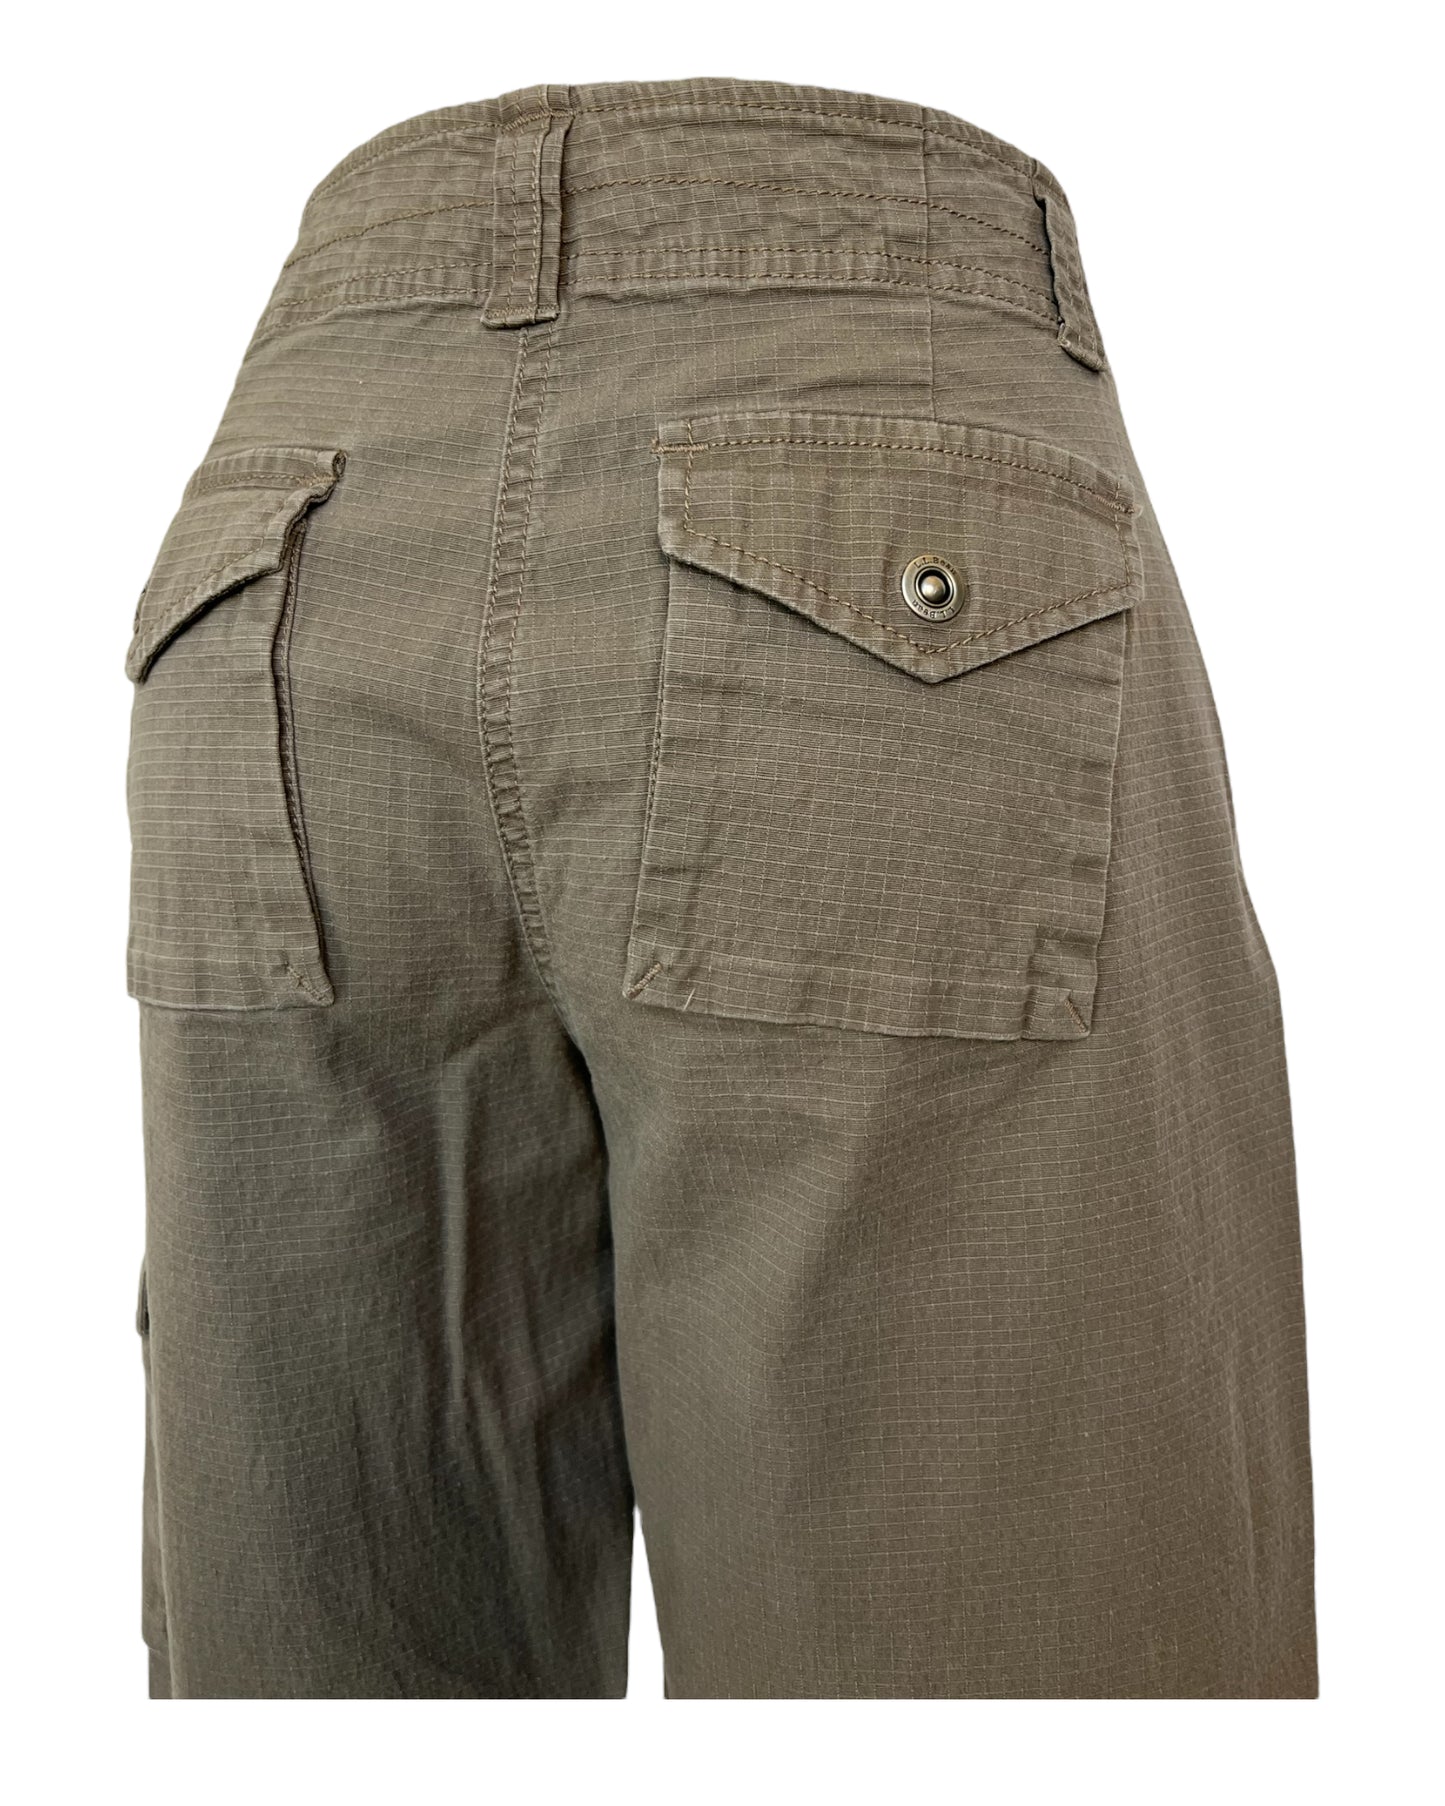 2000s Rubble Brown Pants